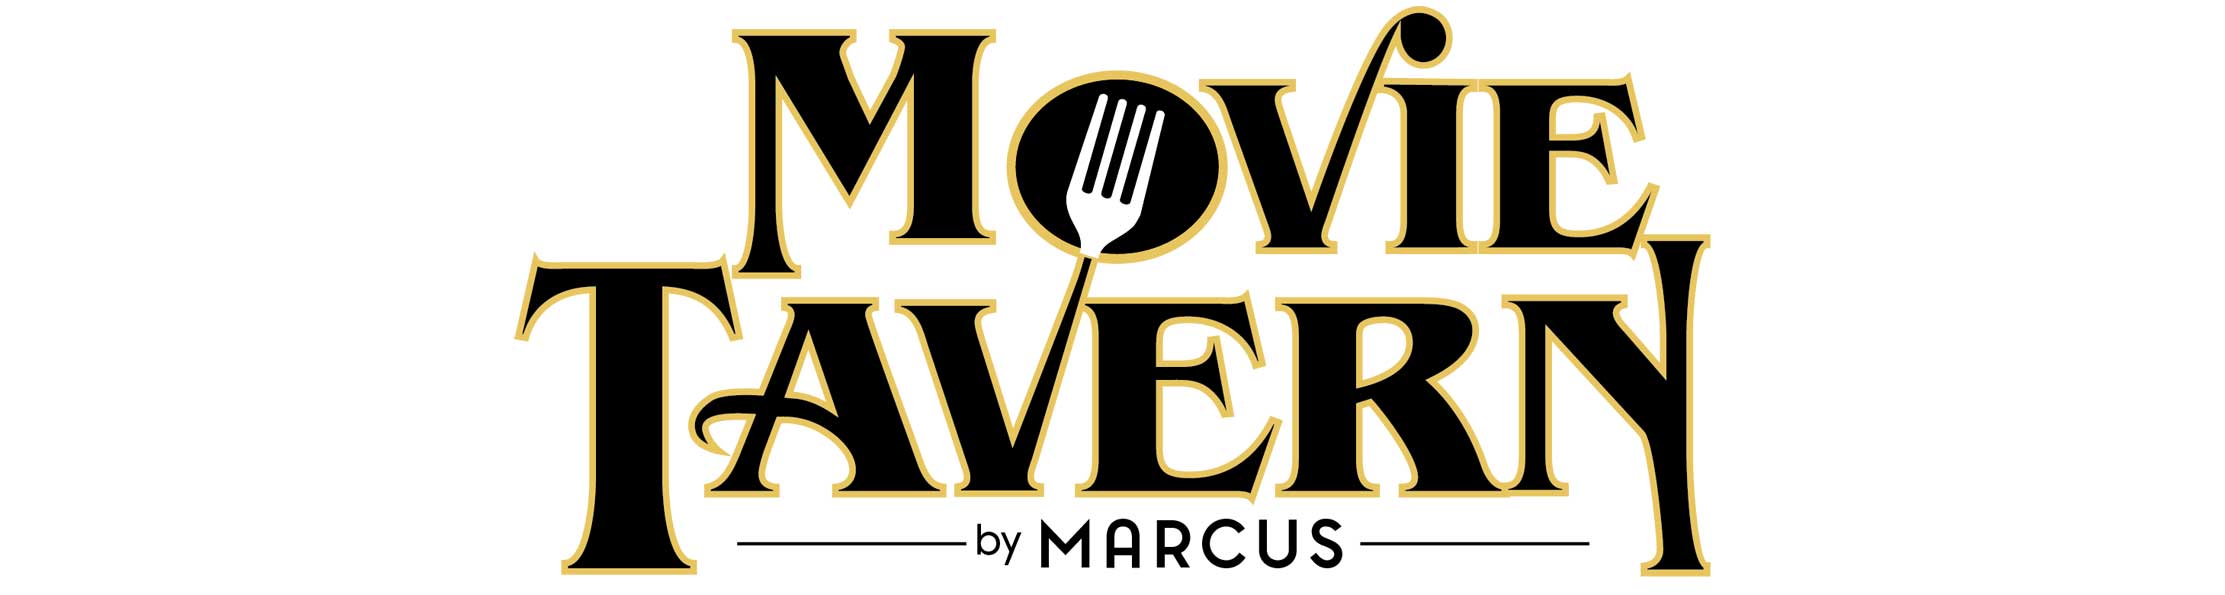 Movie Tavern Jobs Careers Marcus Careers